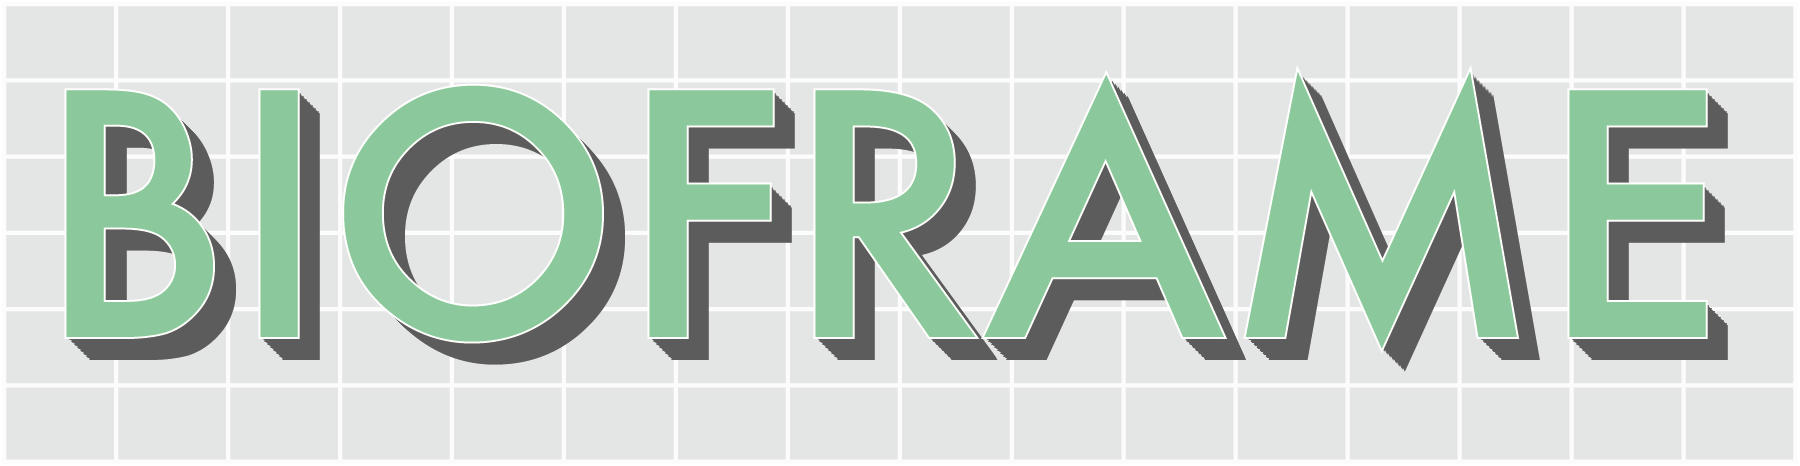 bioframe-logo.png